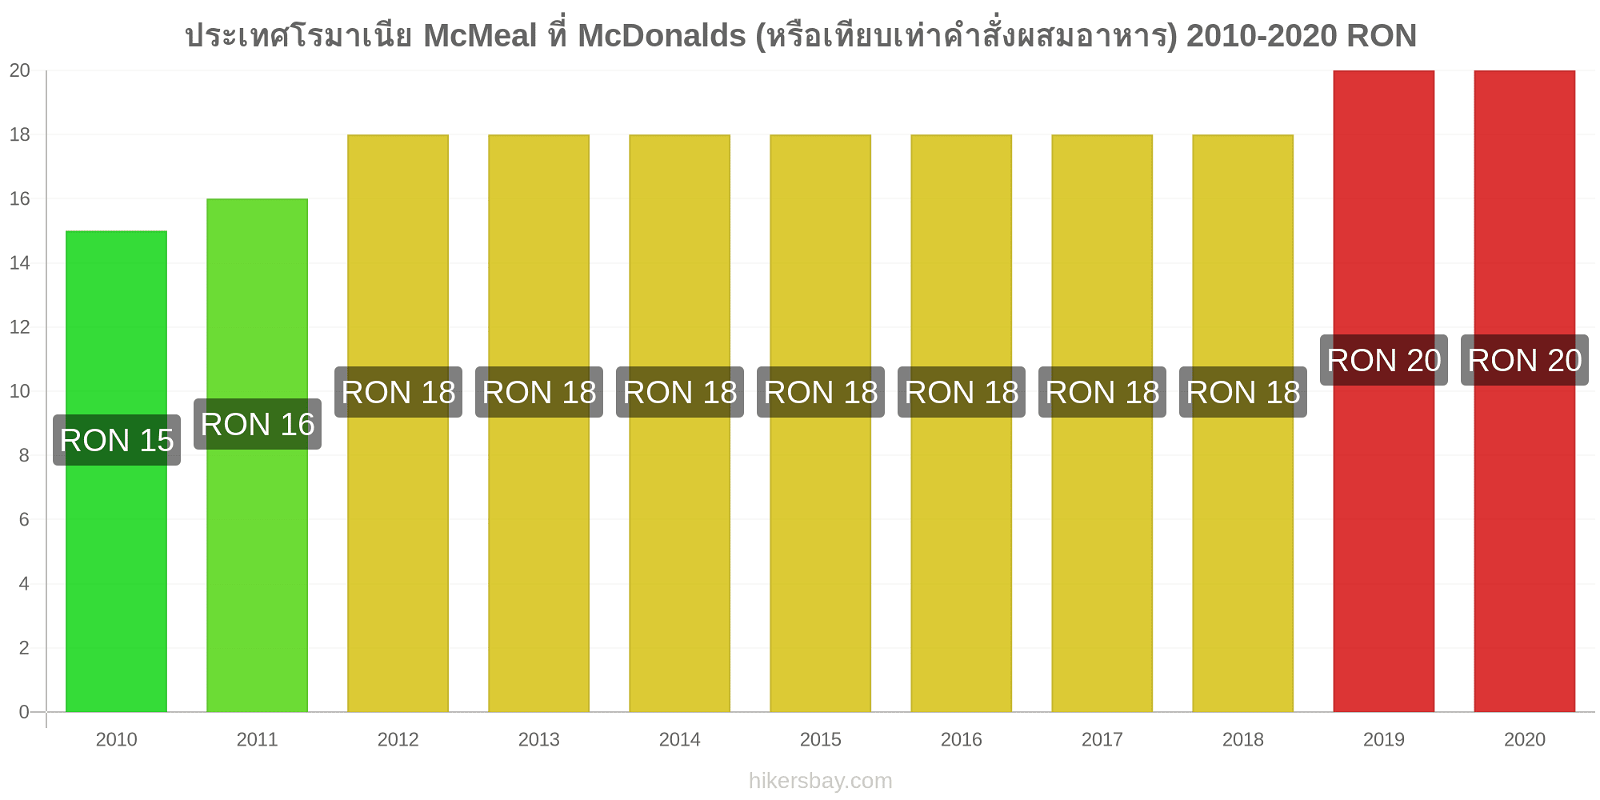 ประเทศโรมาเนีย การเปลี่ยนแปลงราคา McMeal ที่ McDonalds (หรือเทียบเท่าคำสั่งผสมอาหาร) hikersbay.com